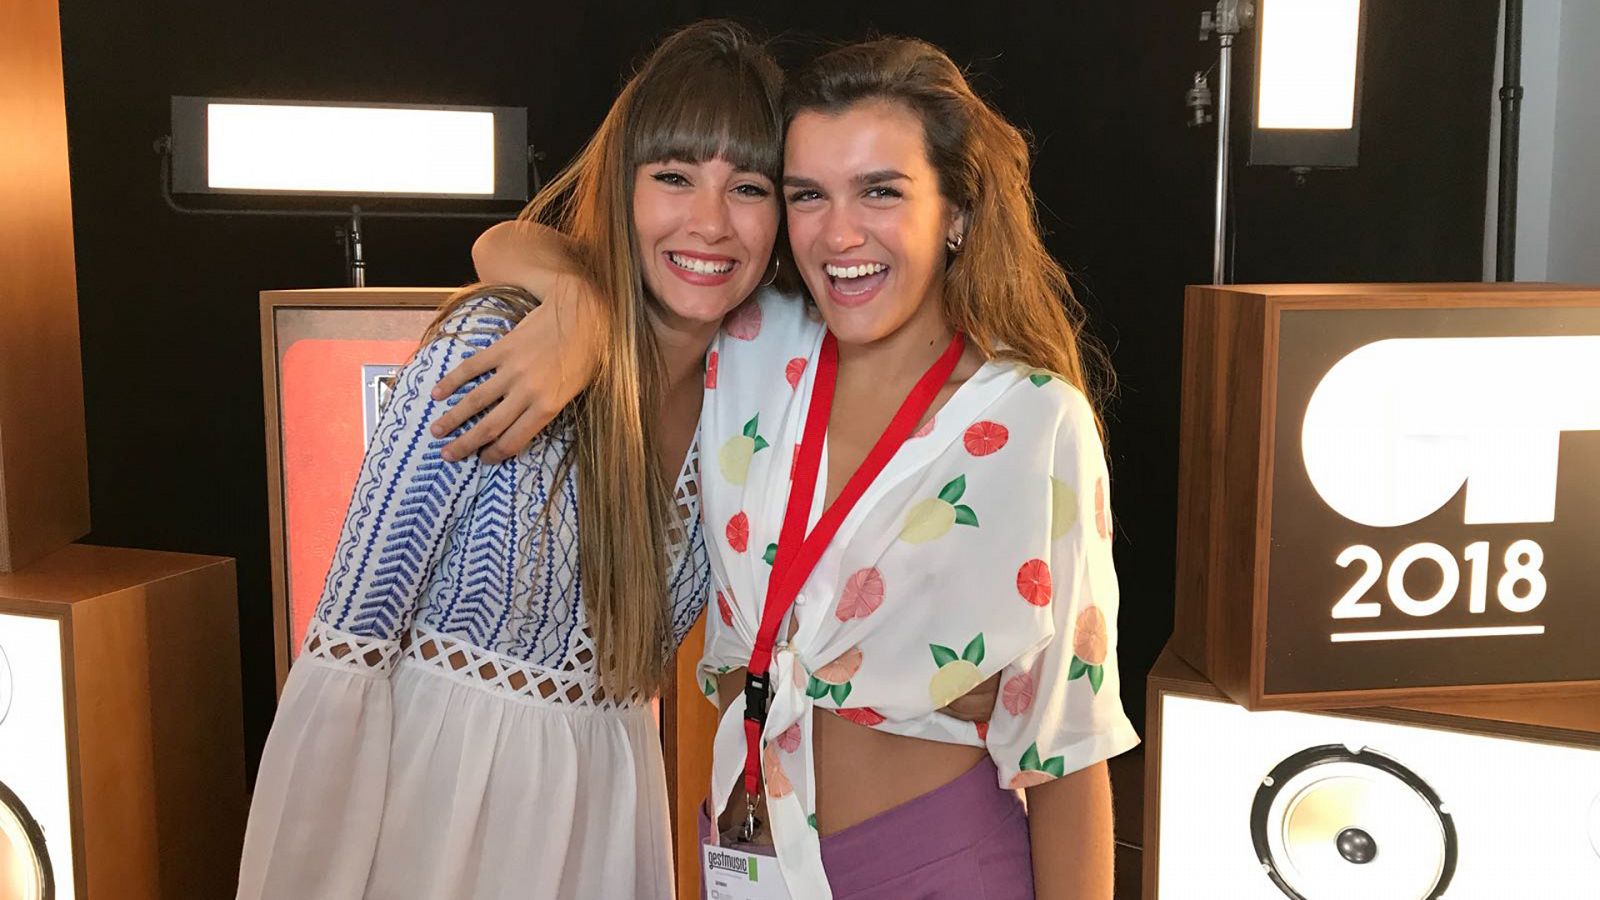 OT 2018 - Amaia y Aitana interpretan "Con las ganas" en el casting final de OT